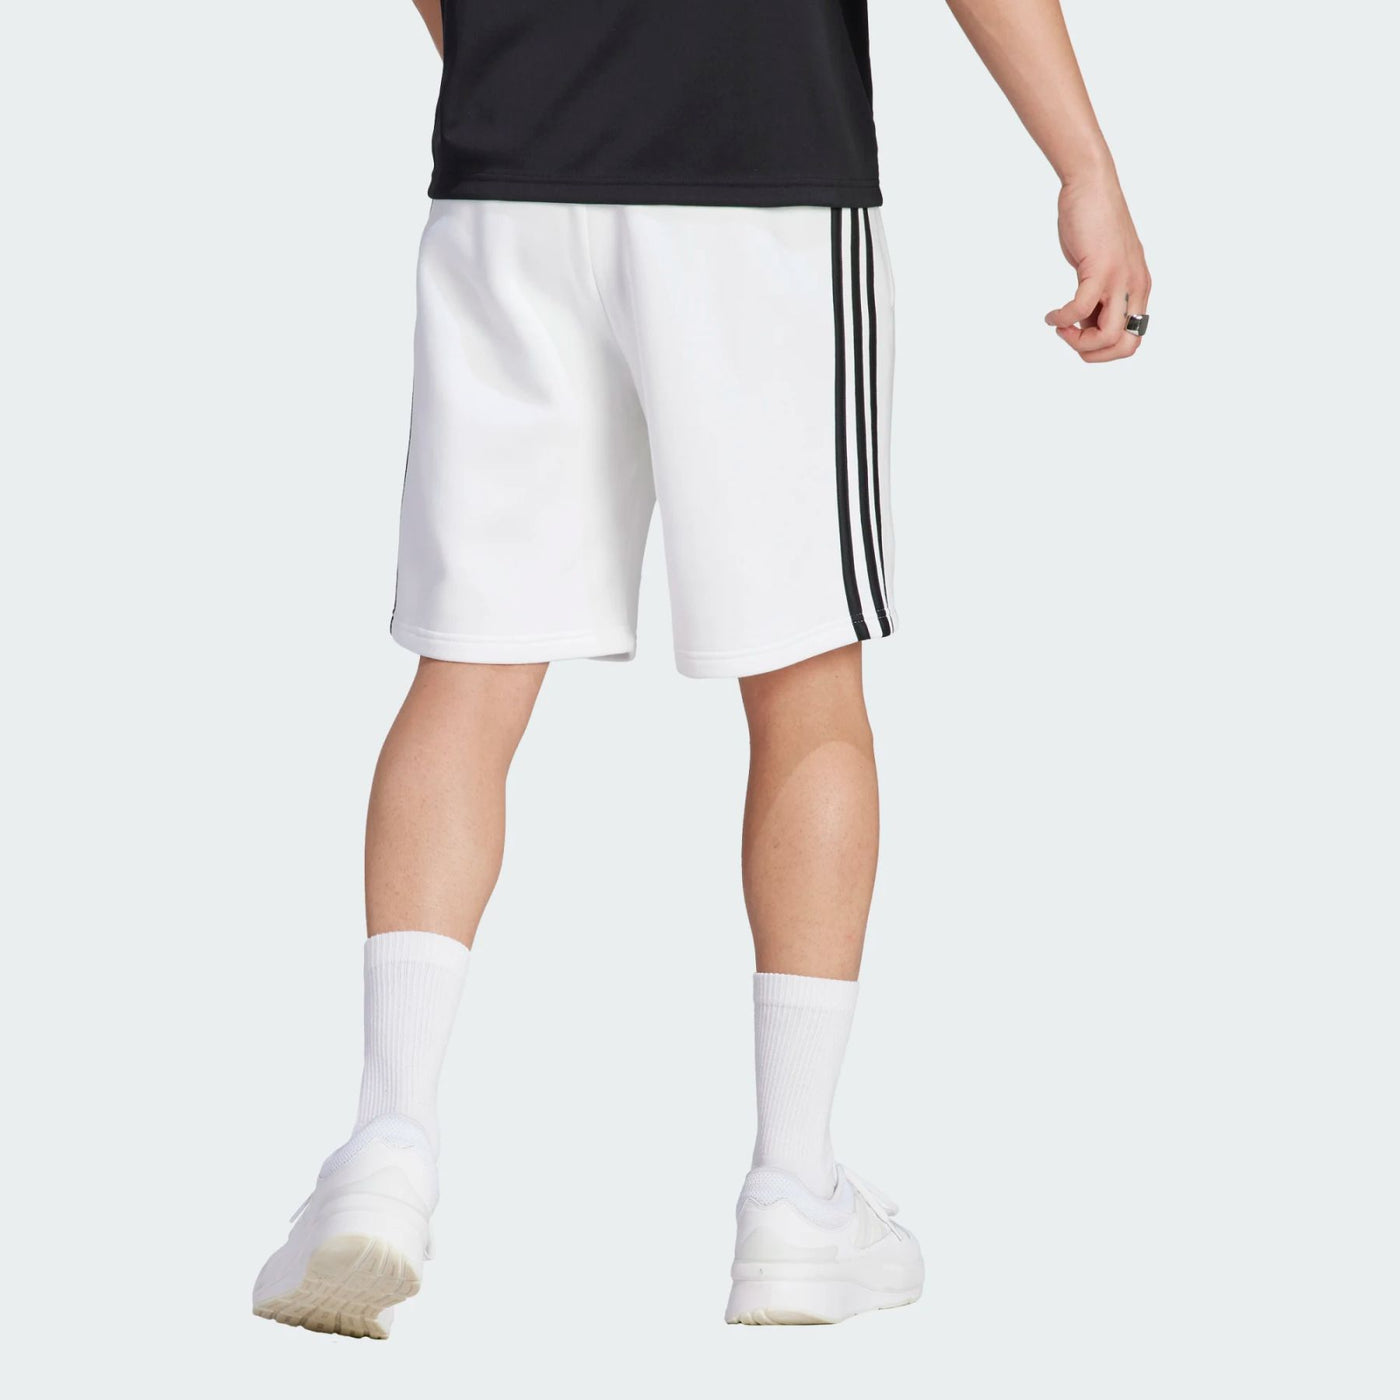 IJ8895 - Shorts - Adidas